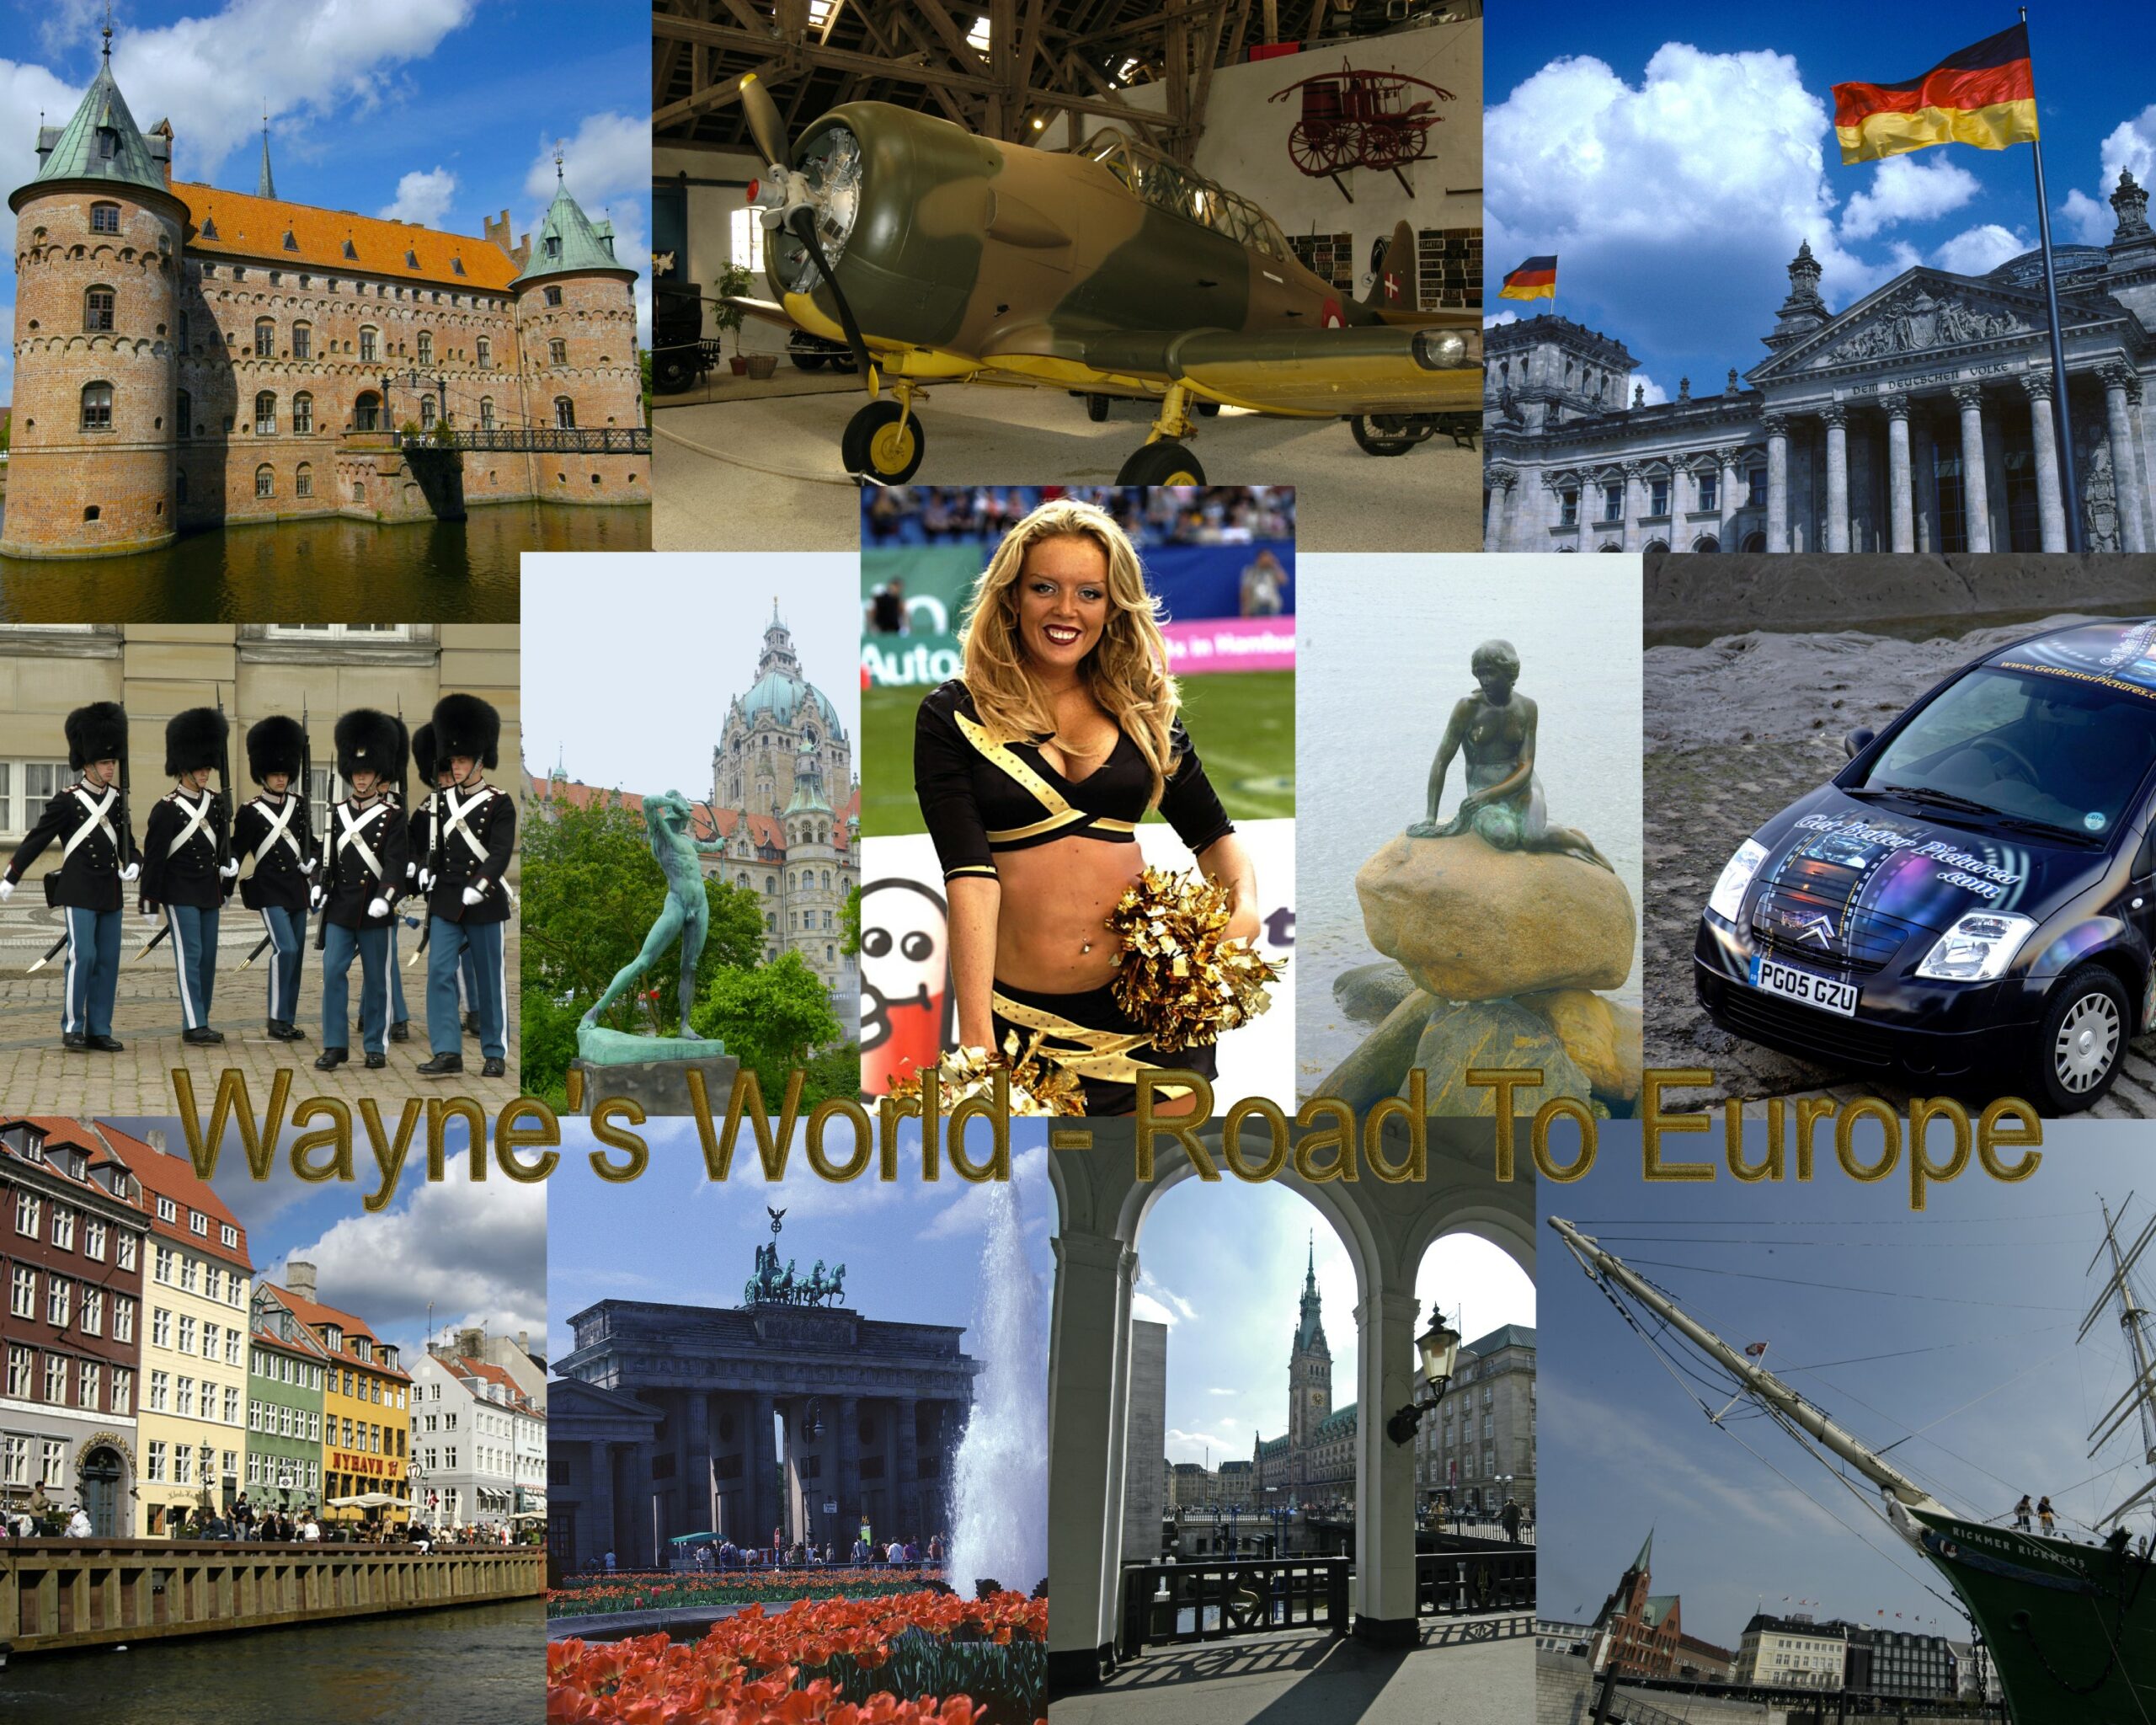 Wayne’s Travels in Europe